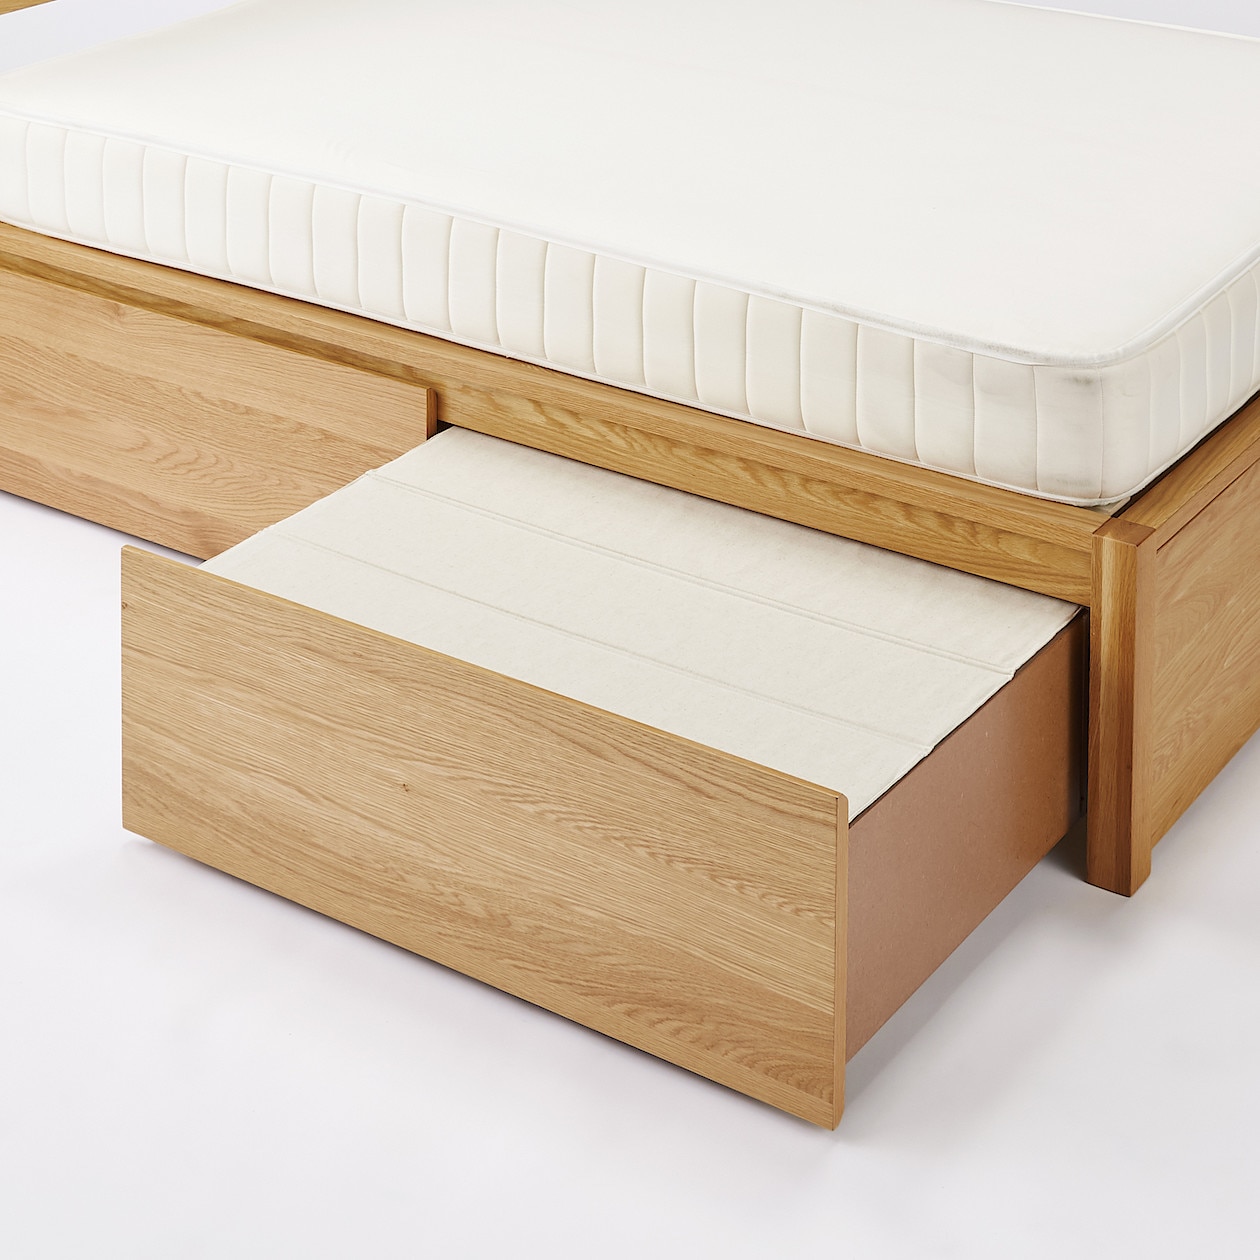 ポリエステル綿麻混・木製ベッド・オーク材用ベッド下収納ふた